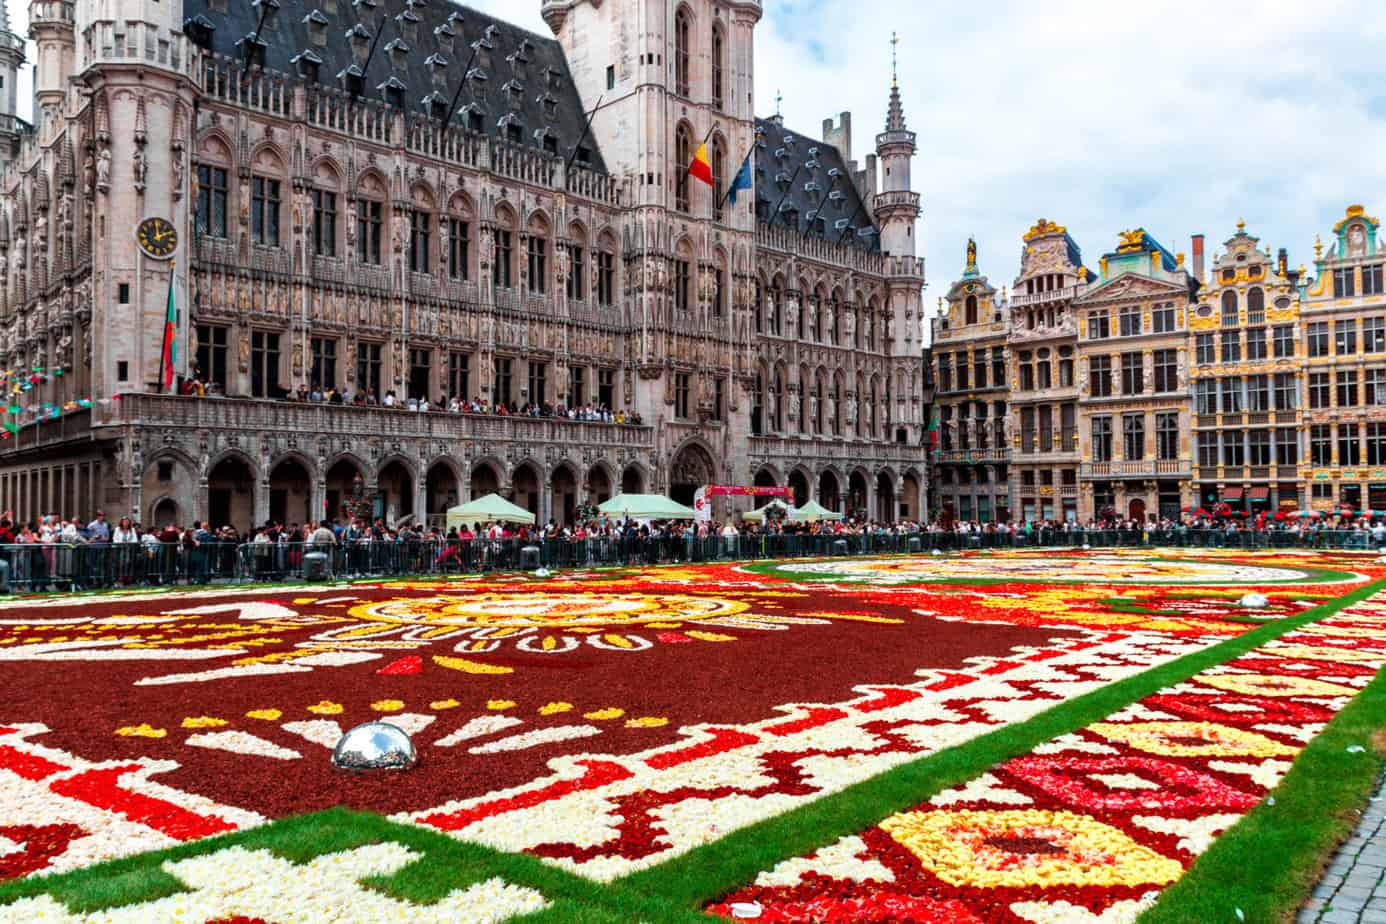 Brussel flowers